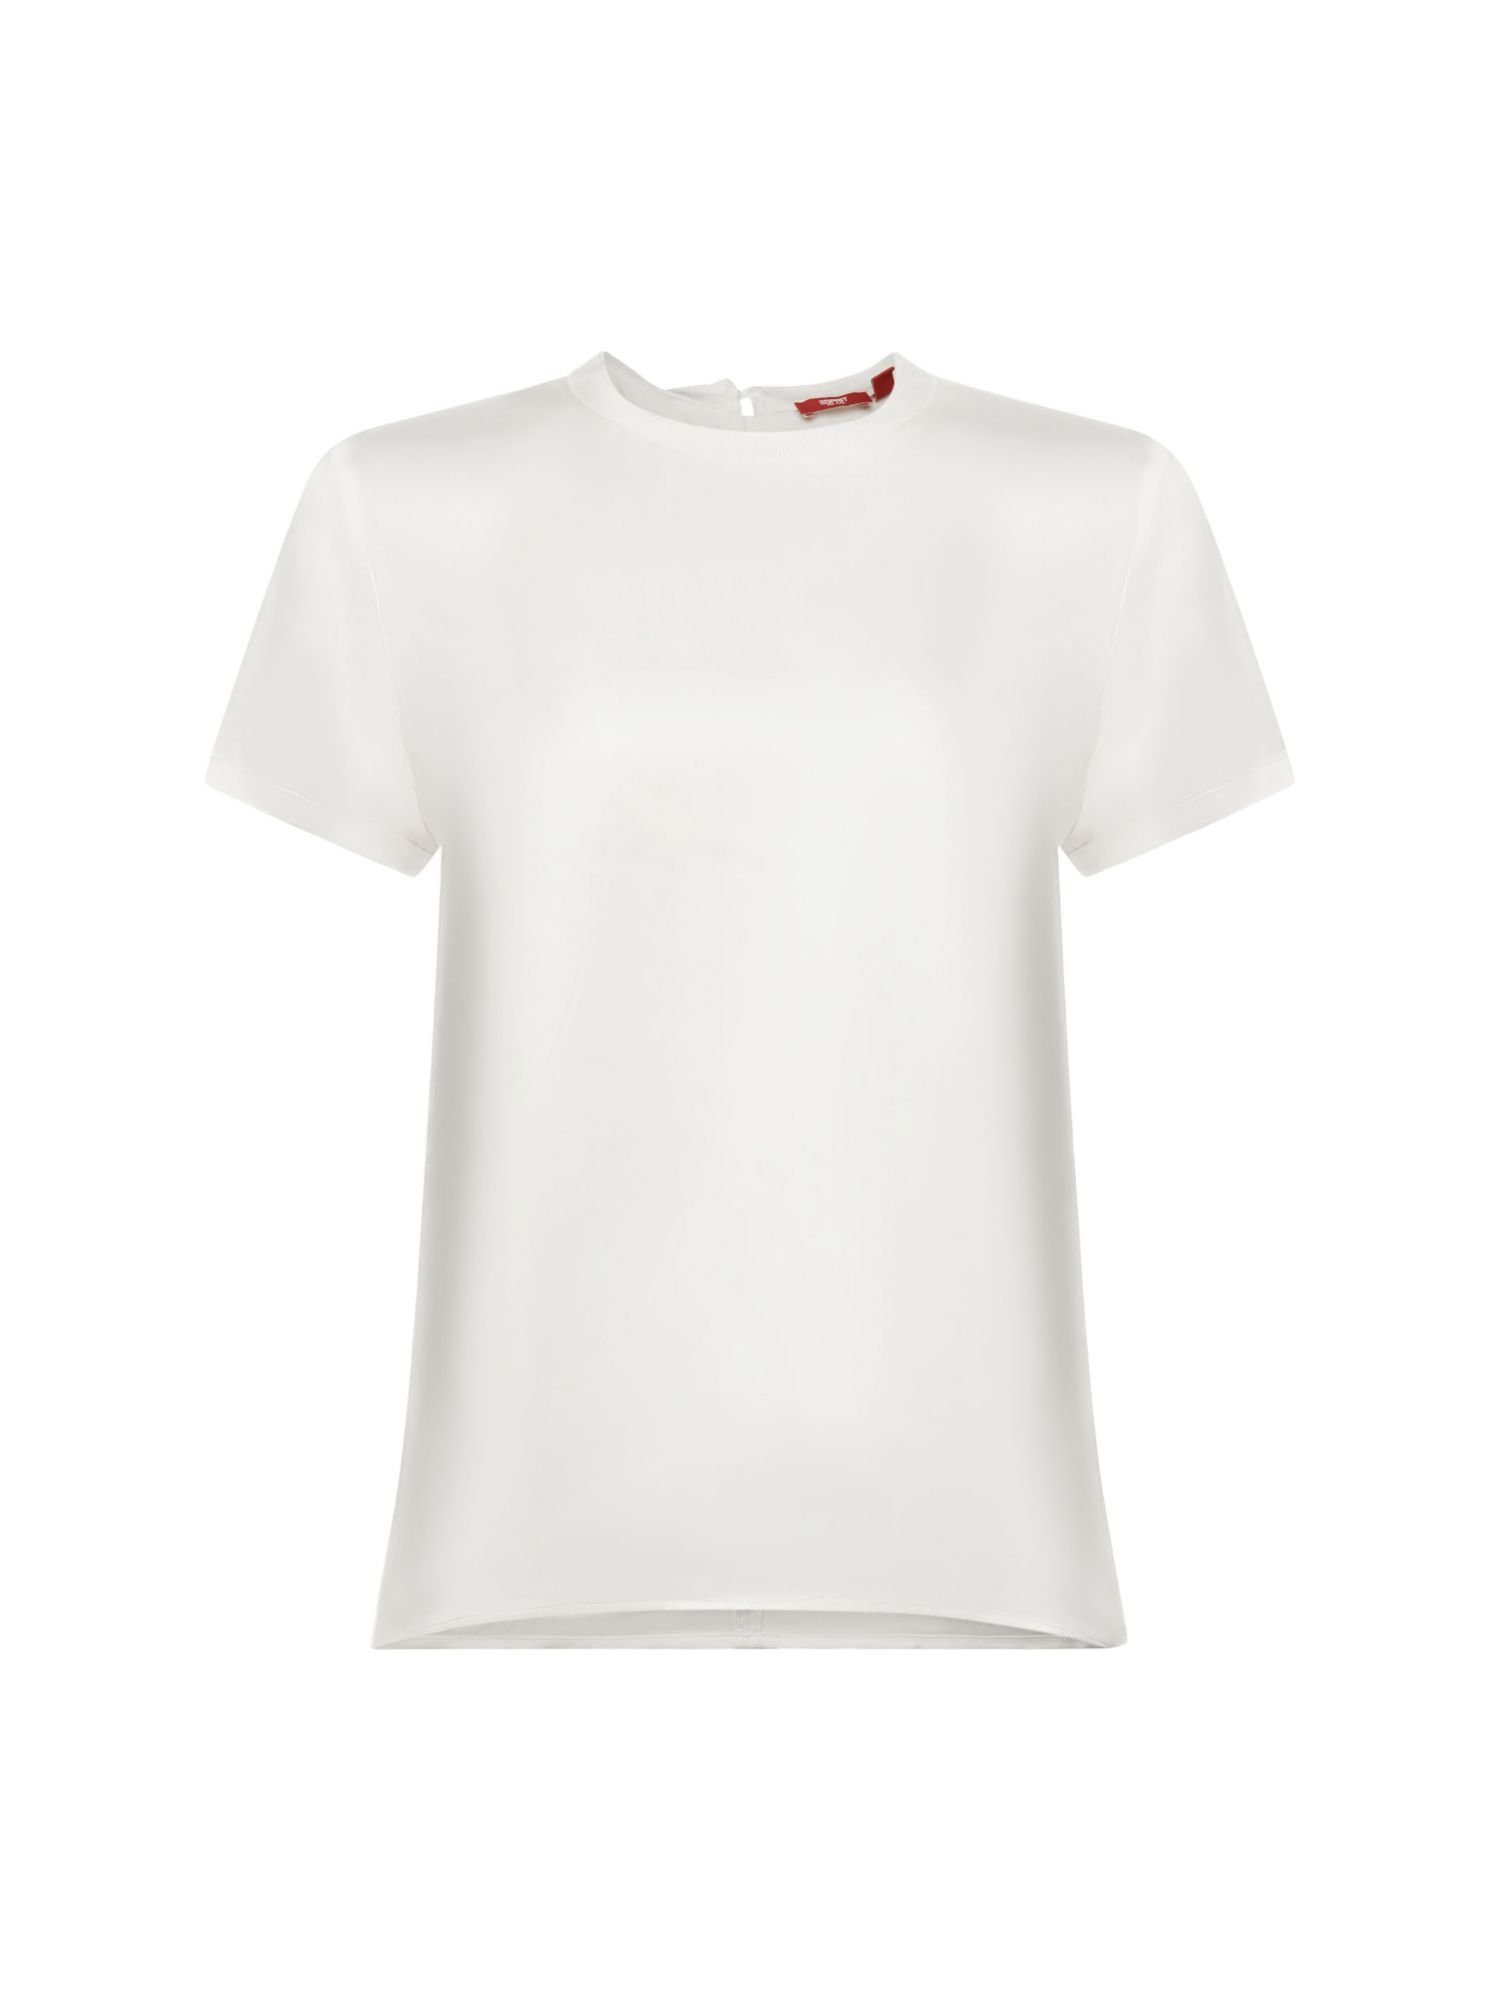 Weiße Satin Shirts für Damen online kaufen | OTTO